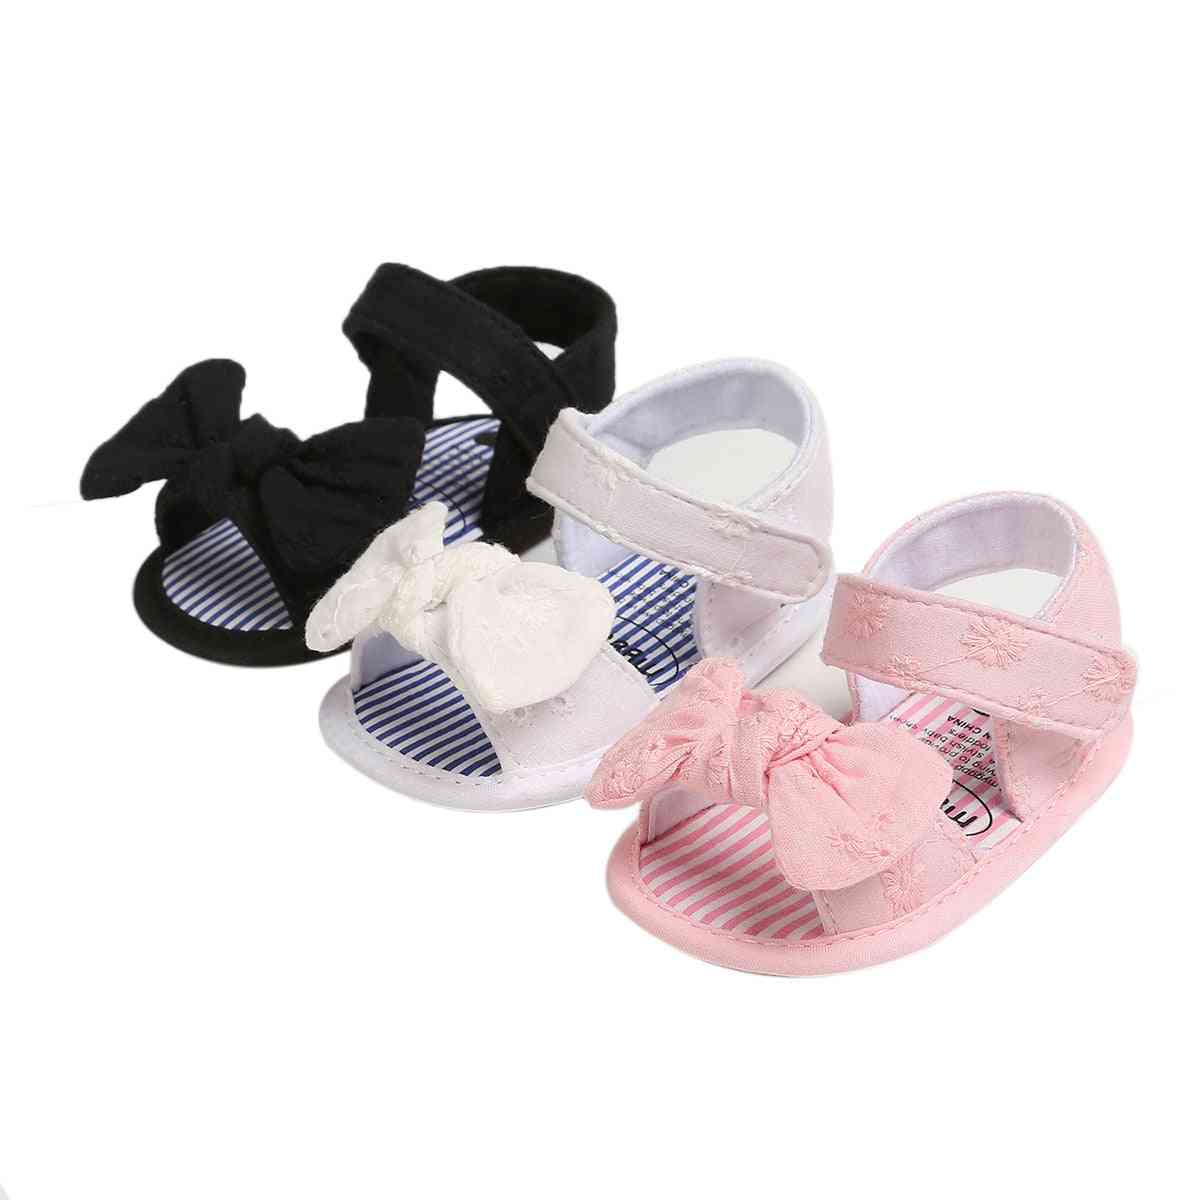 Lasten vauvan sandaalit, kesäiset kiinteäraitaiset rusettitasaiset kengät